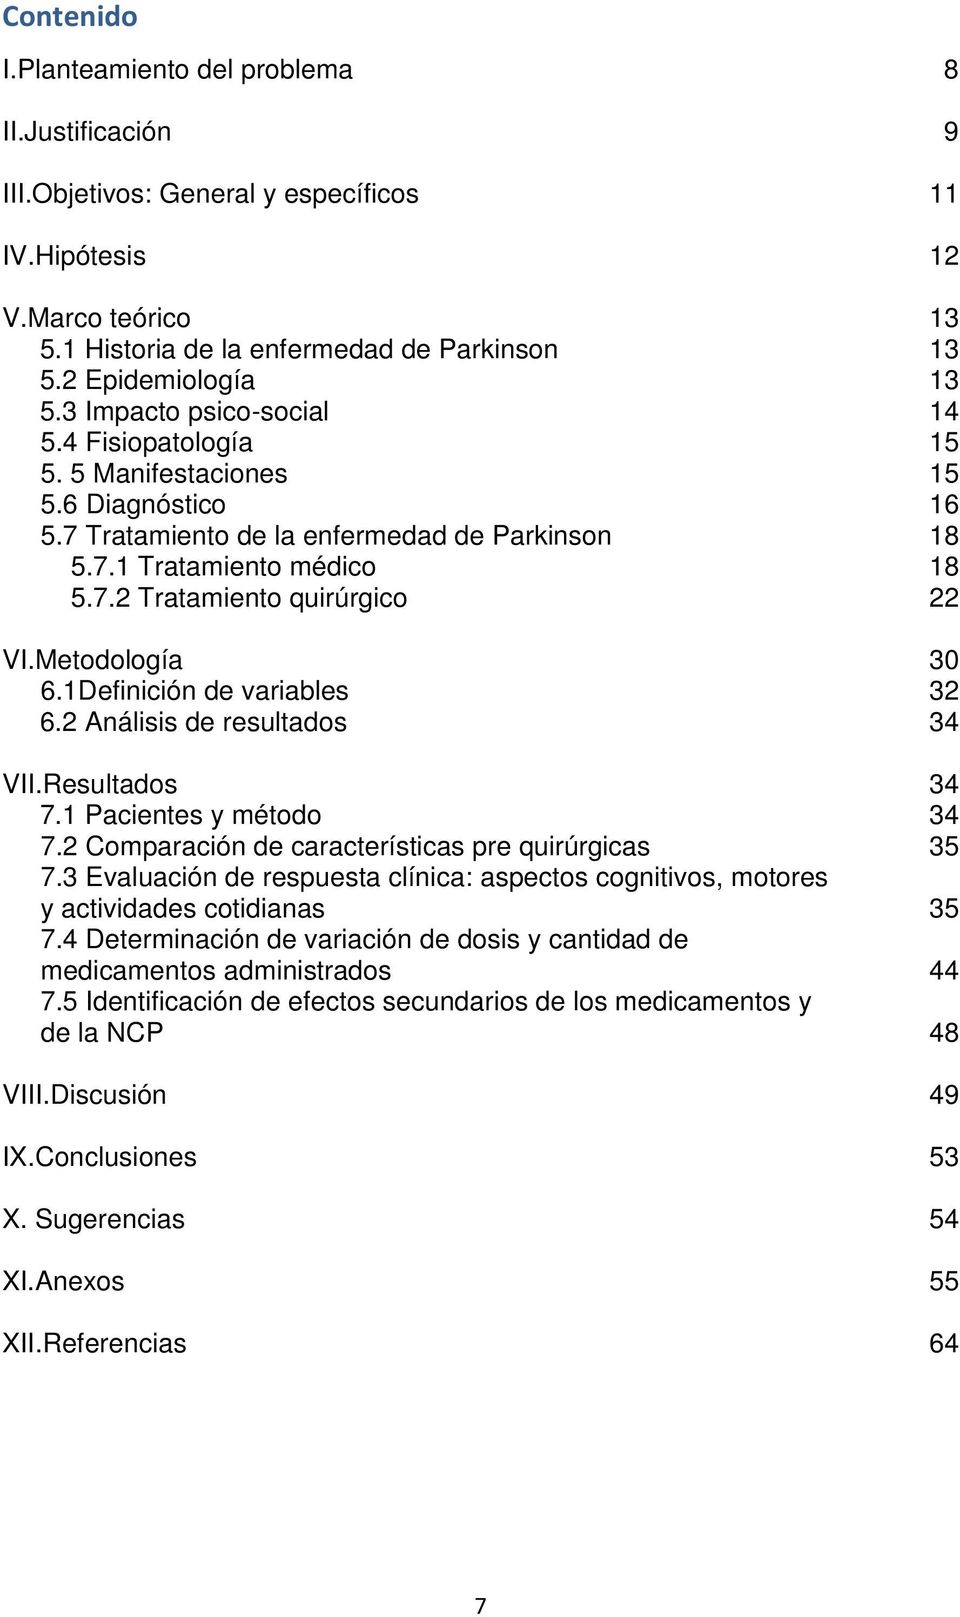 Metodología 30 6.1Definición de variables 32 6.2 Análisis de resultados 34 VII.Resultados 34 7.1 Pacientes y método 34 7.2 Comparación de características pre quirúrgicas 35 7.